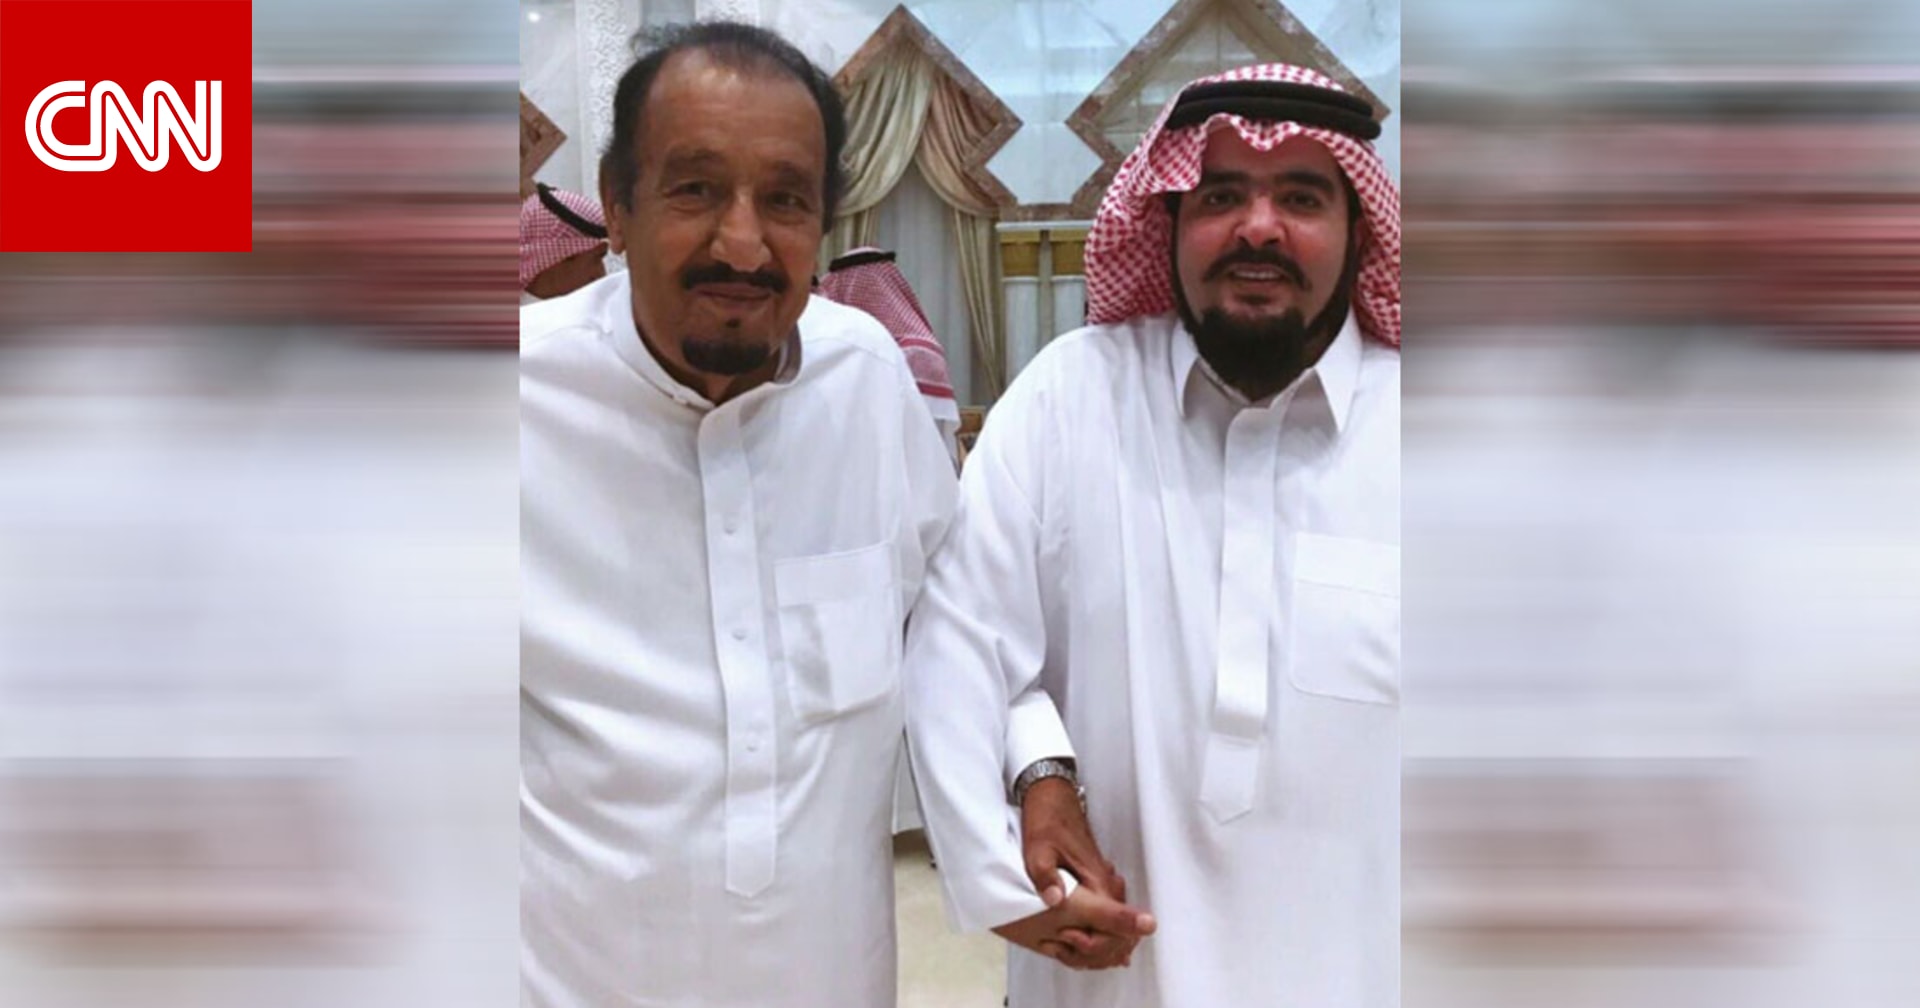 الأمير عبدالعزيز بن فهد يتصدر تويتر في السعودية بعد فيديو موقف مع طفل من ذوي الاحتياجات الخاصة Cnn Arabic